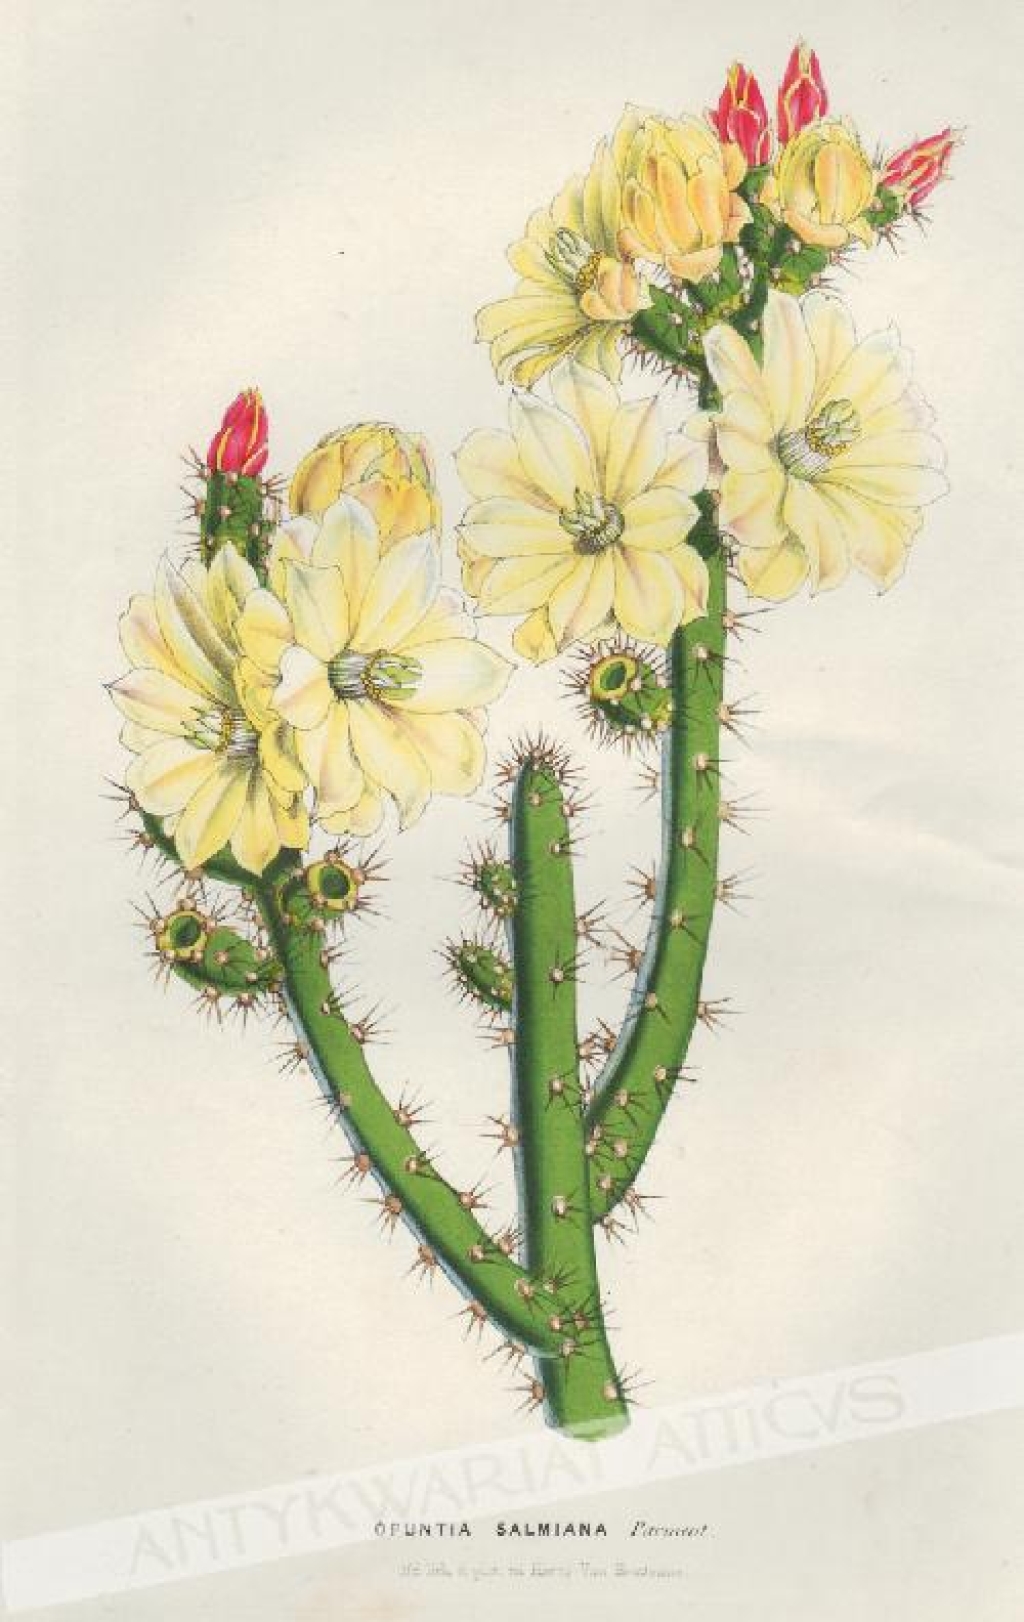 [rycina, 1851] Opuntia Salmiana [opuncja, rodzina kaktusowate]